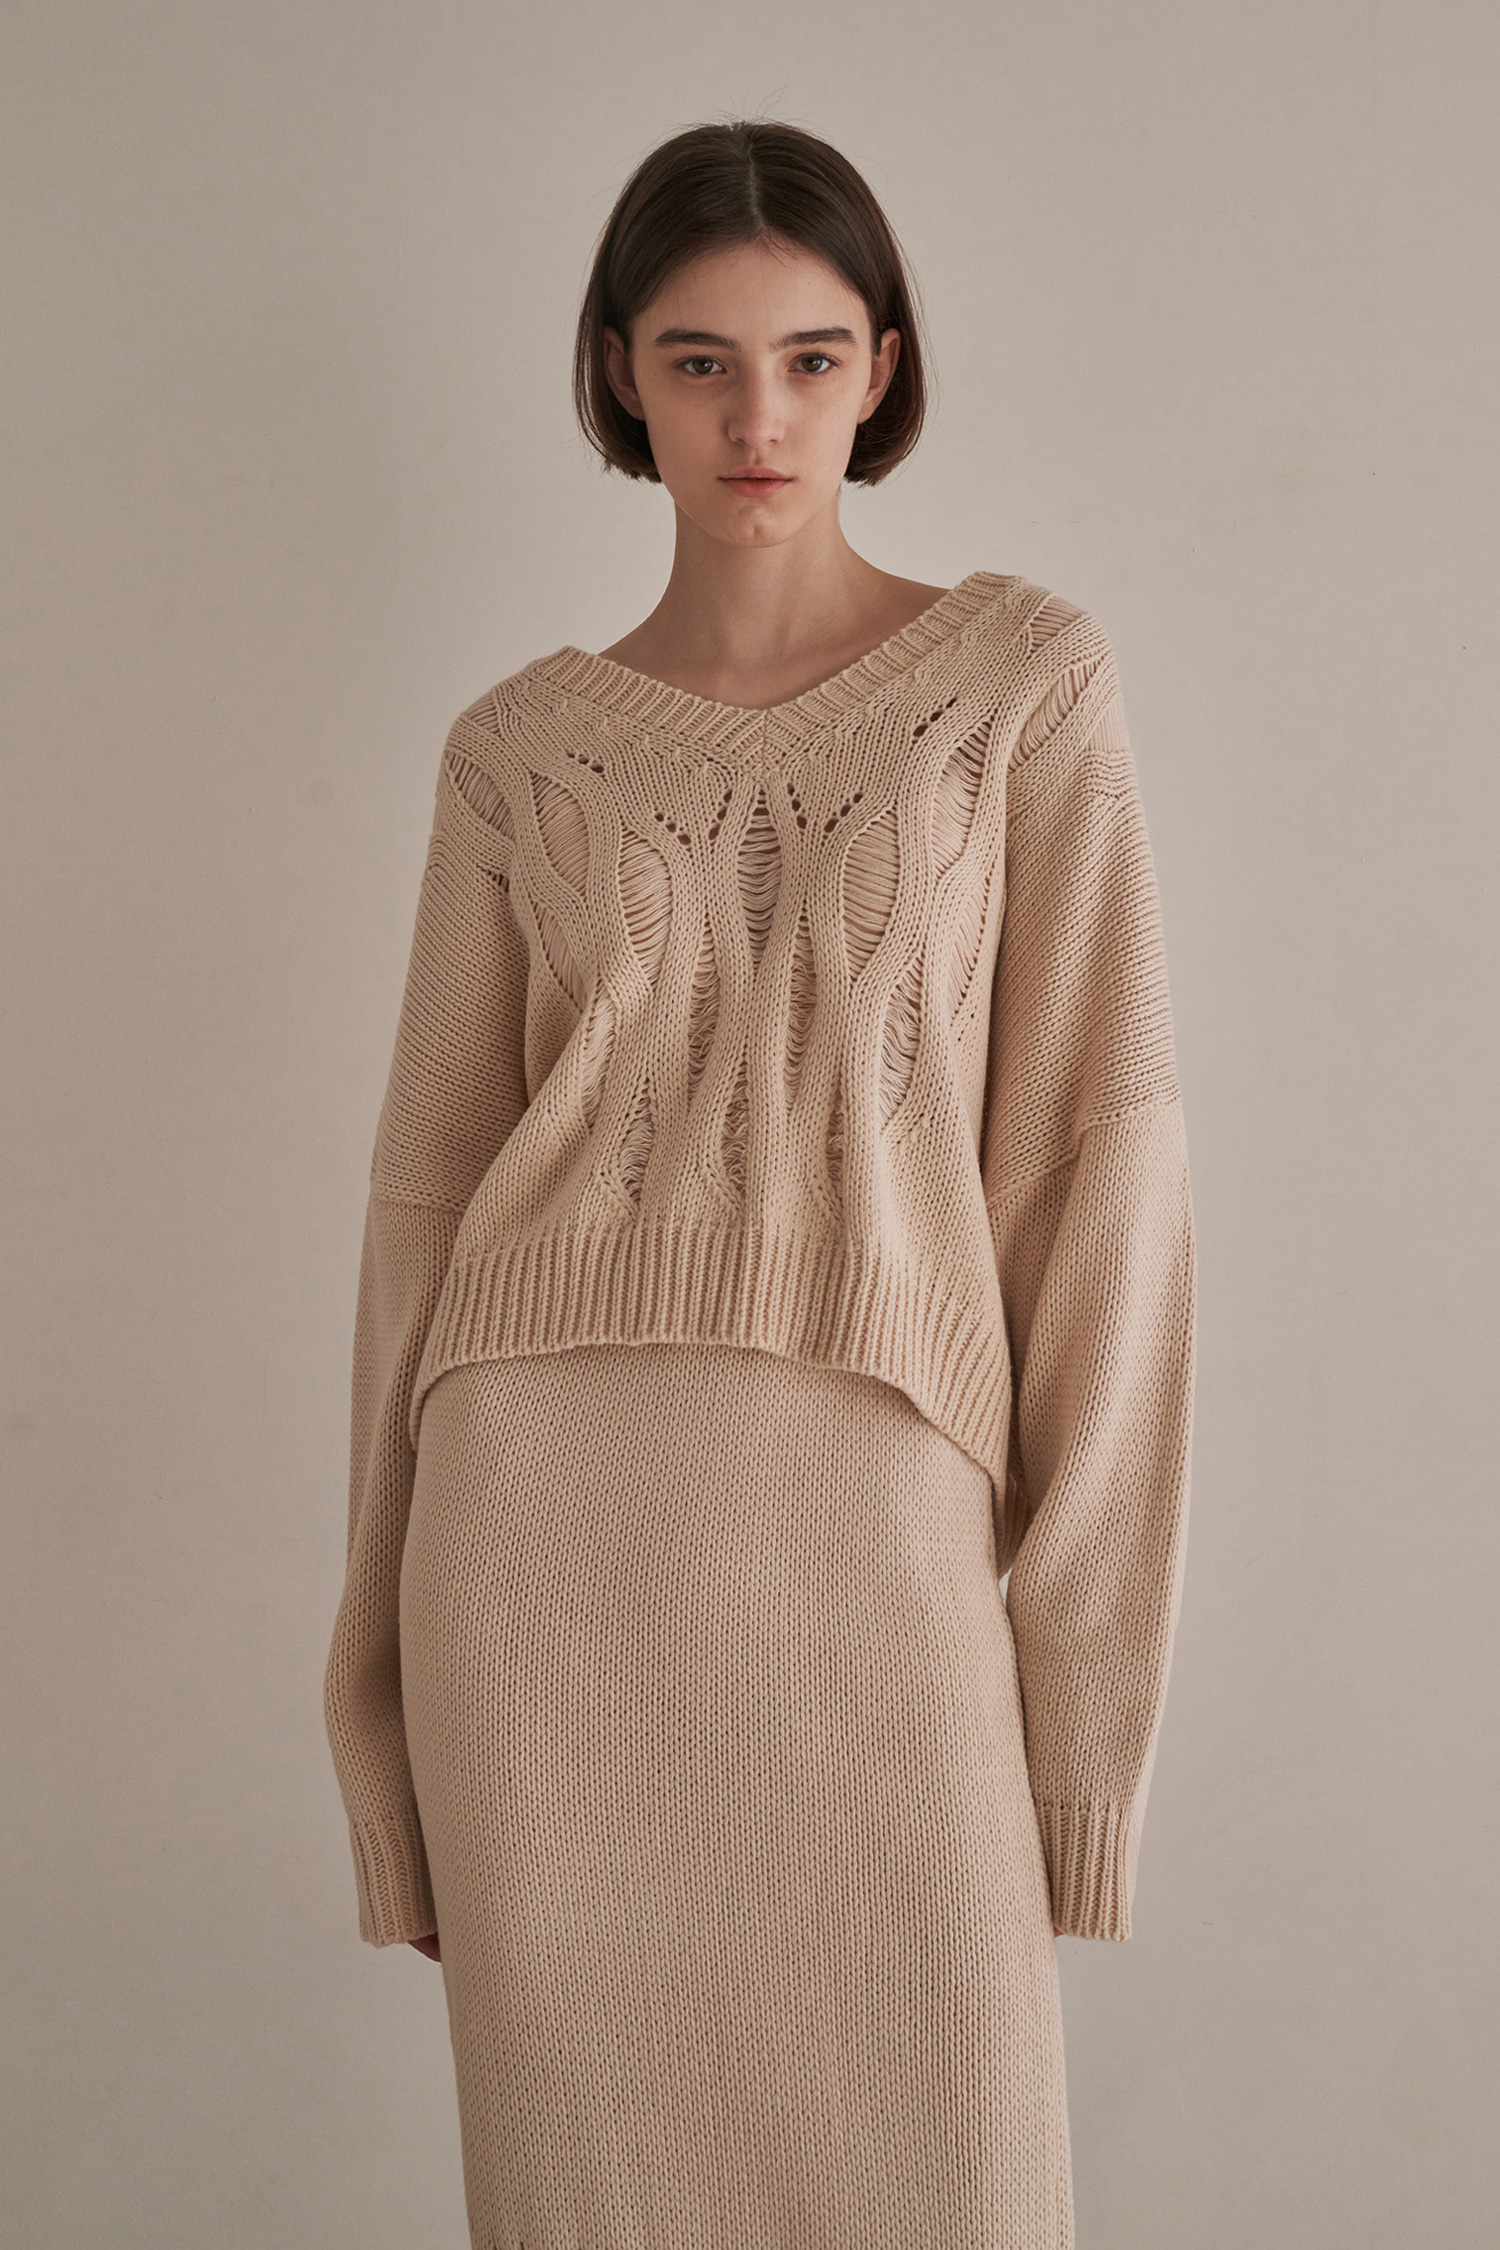 Netting v-neck knit - beige